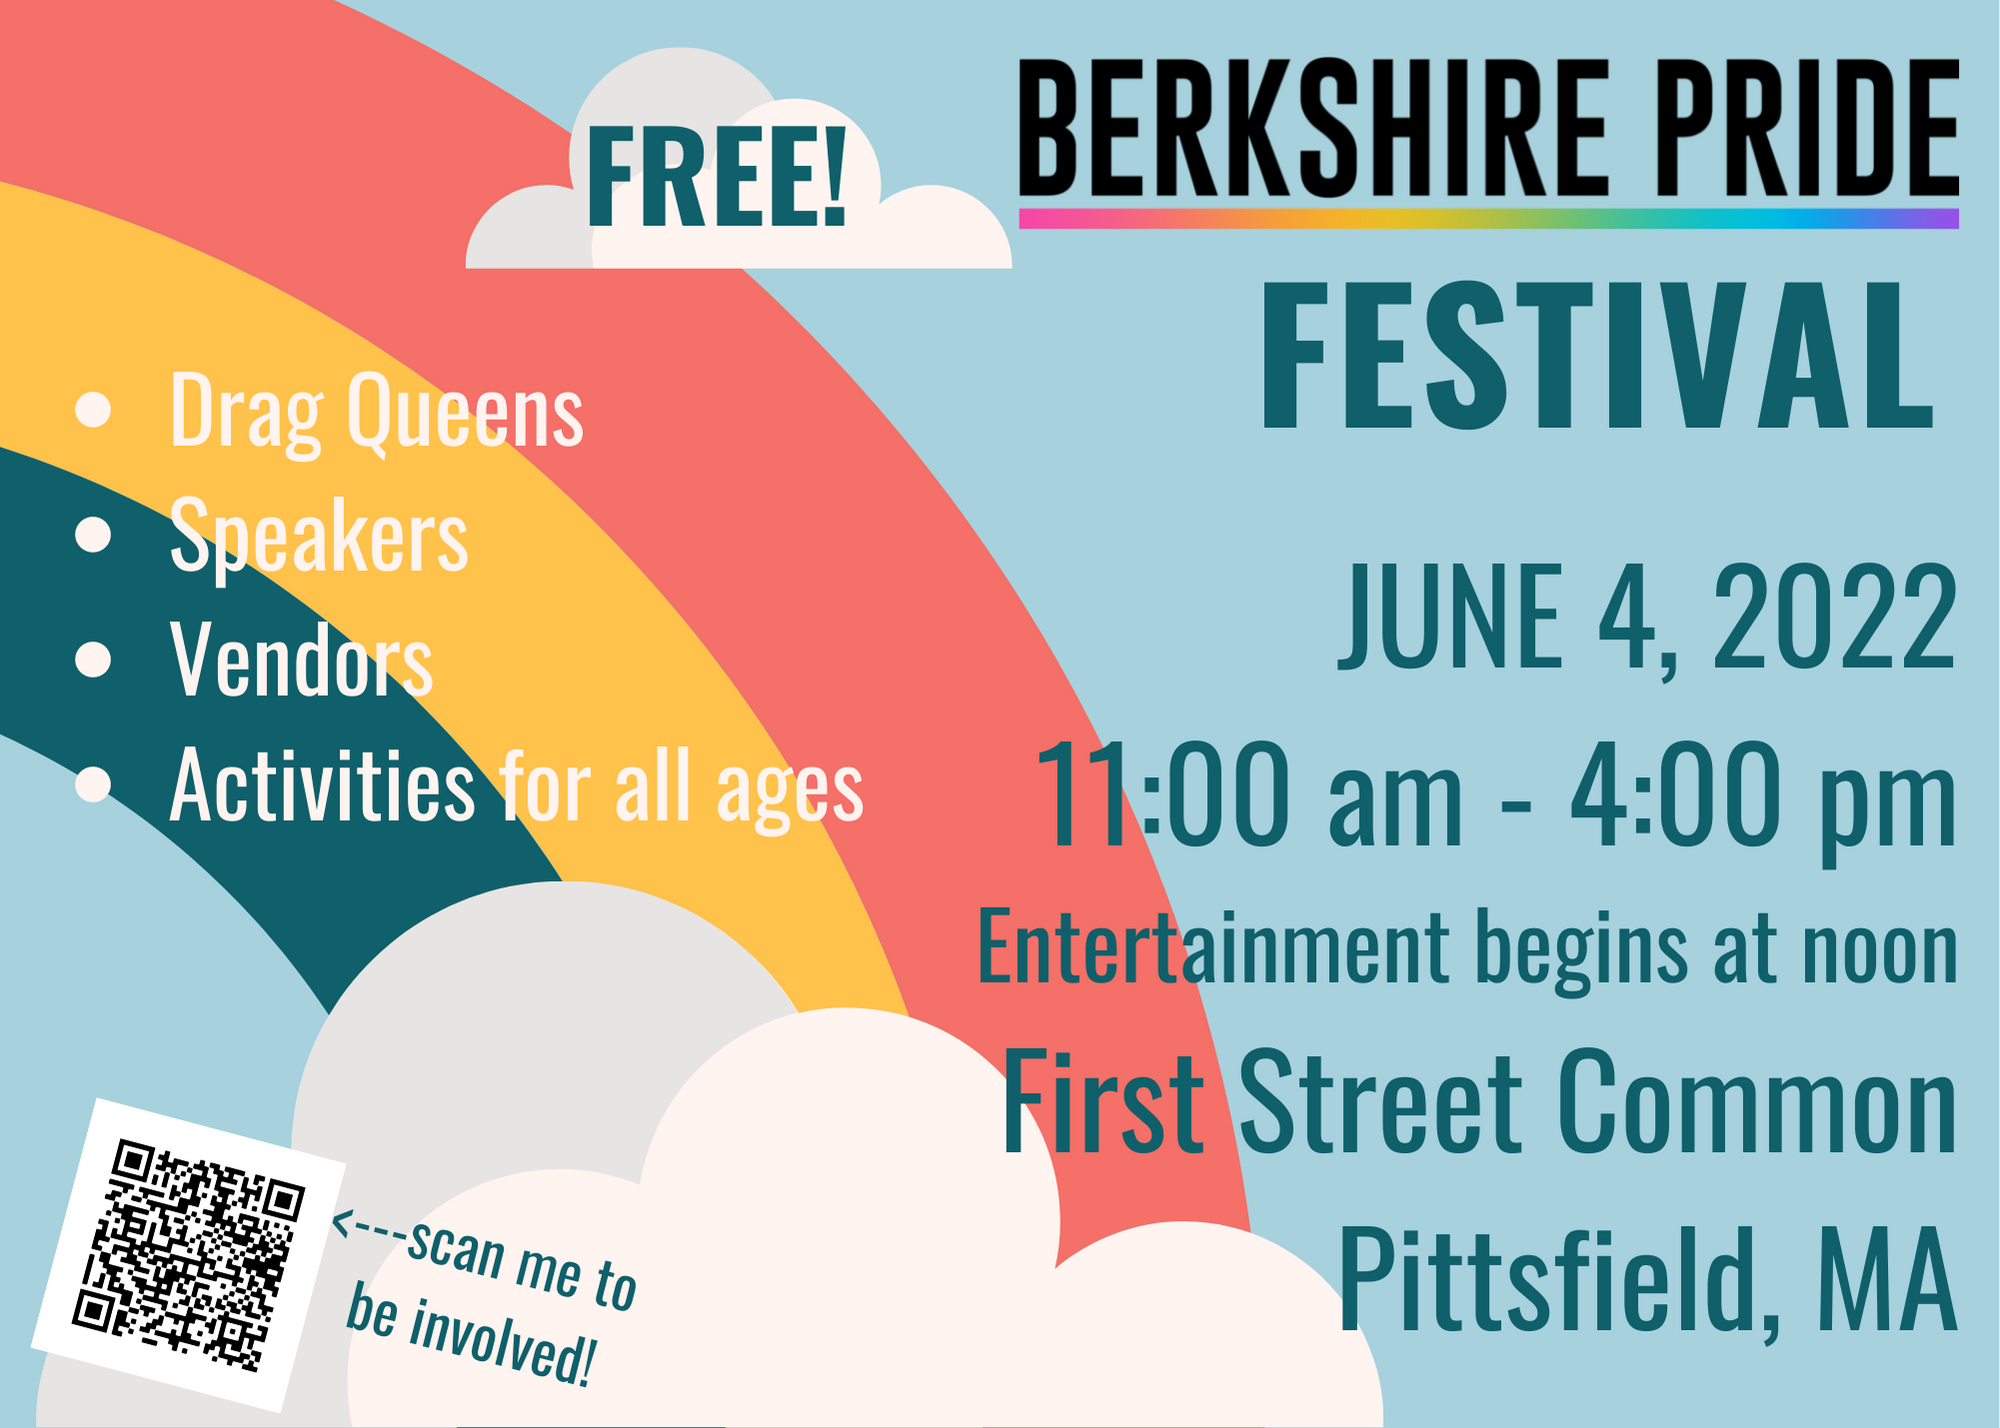 Berkshire Pride Festival, Pittsfield MA